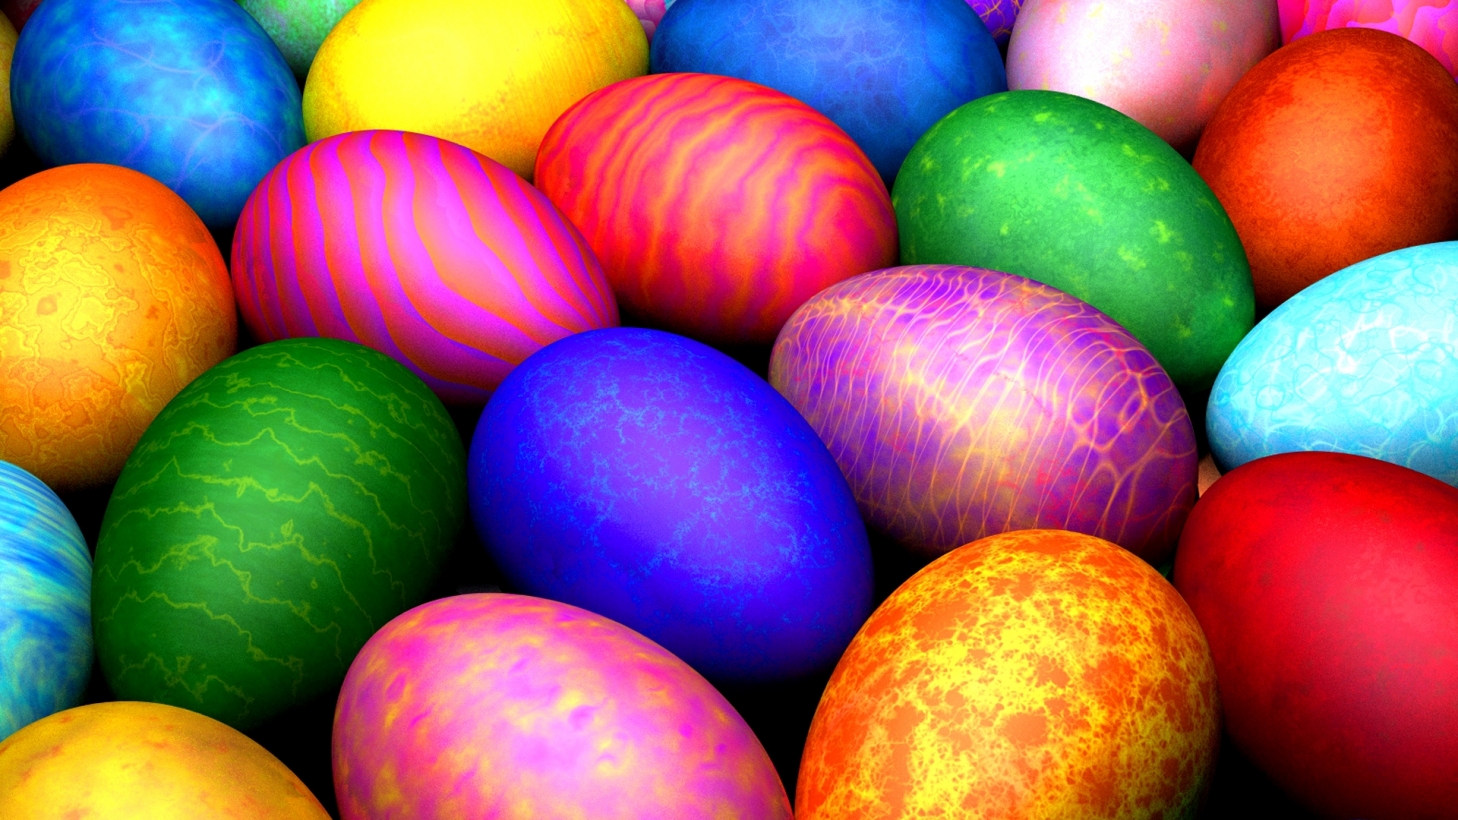 Rādīsim viens otram savas olas! Priecīgas Lieldienas! Olu krāsošanas receptes (Bilde 2)